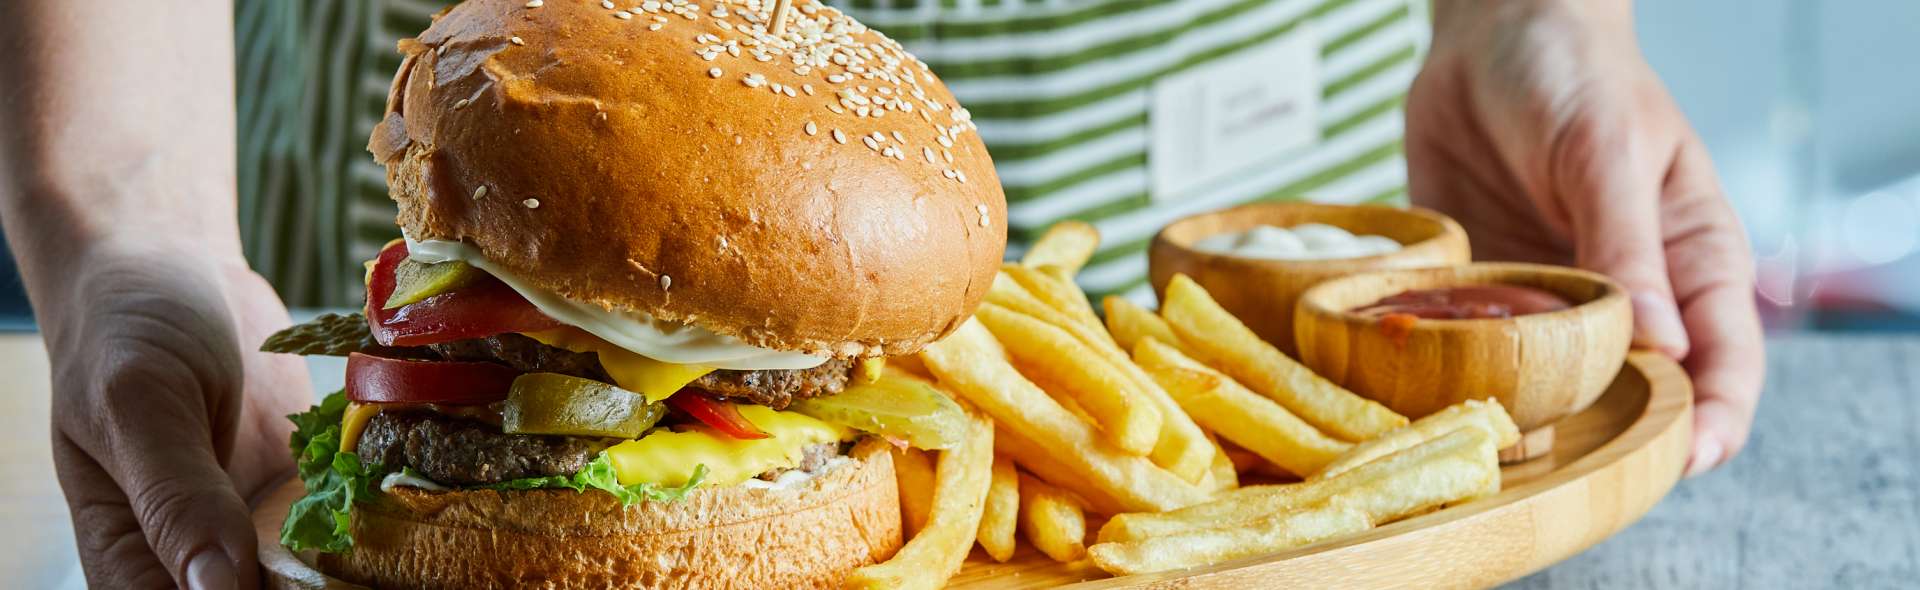 Dia Mundial do Hambúrguer: Dicas para fazer seu hambúrguer em casa!